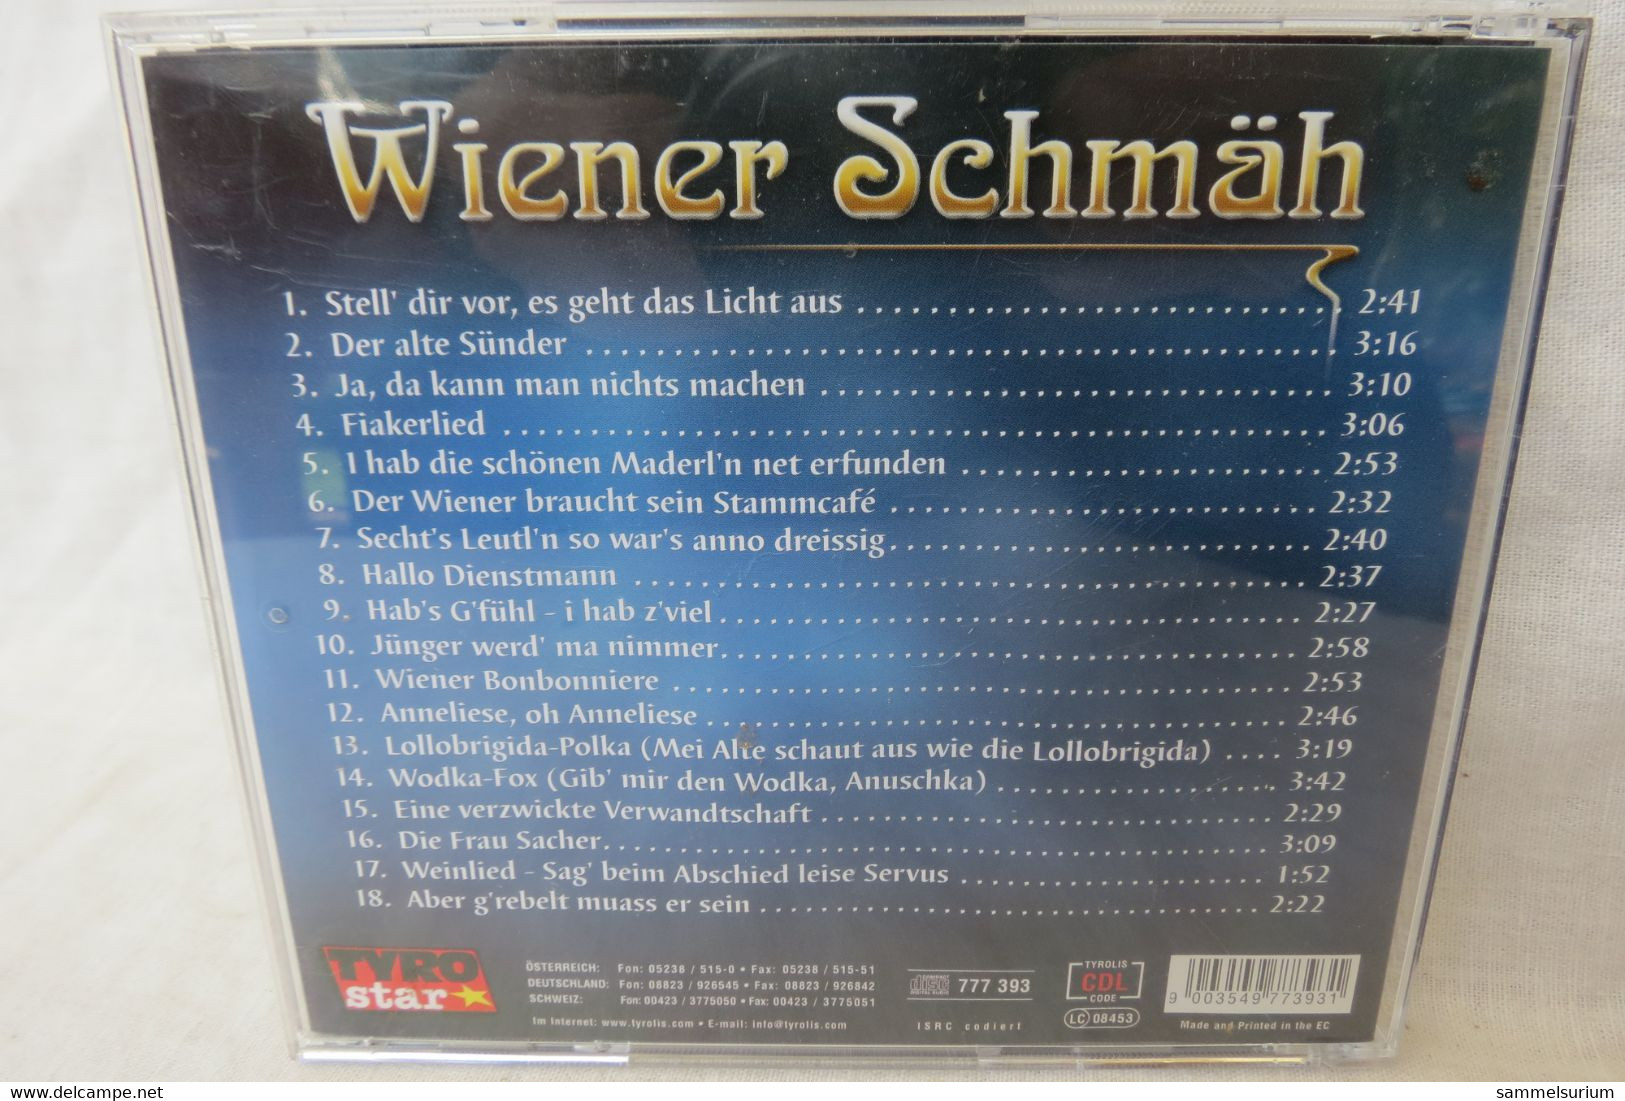 CD "Wiener Schmäh" Mit Paul Hörbiger, Hans Moser, Maria Andergast, Peter Alexander U.a. - Otros - Canción Alemana